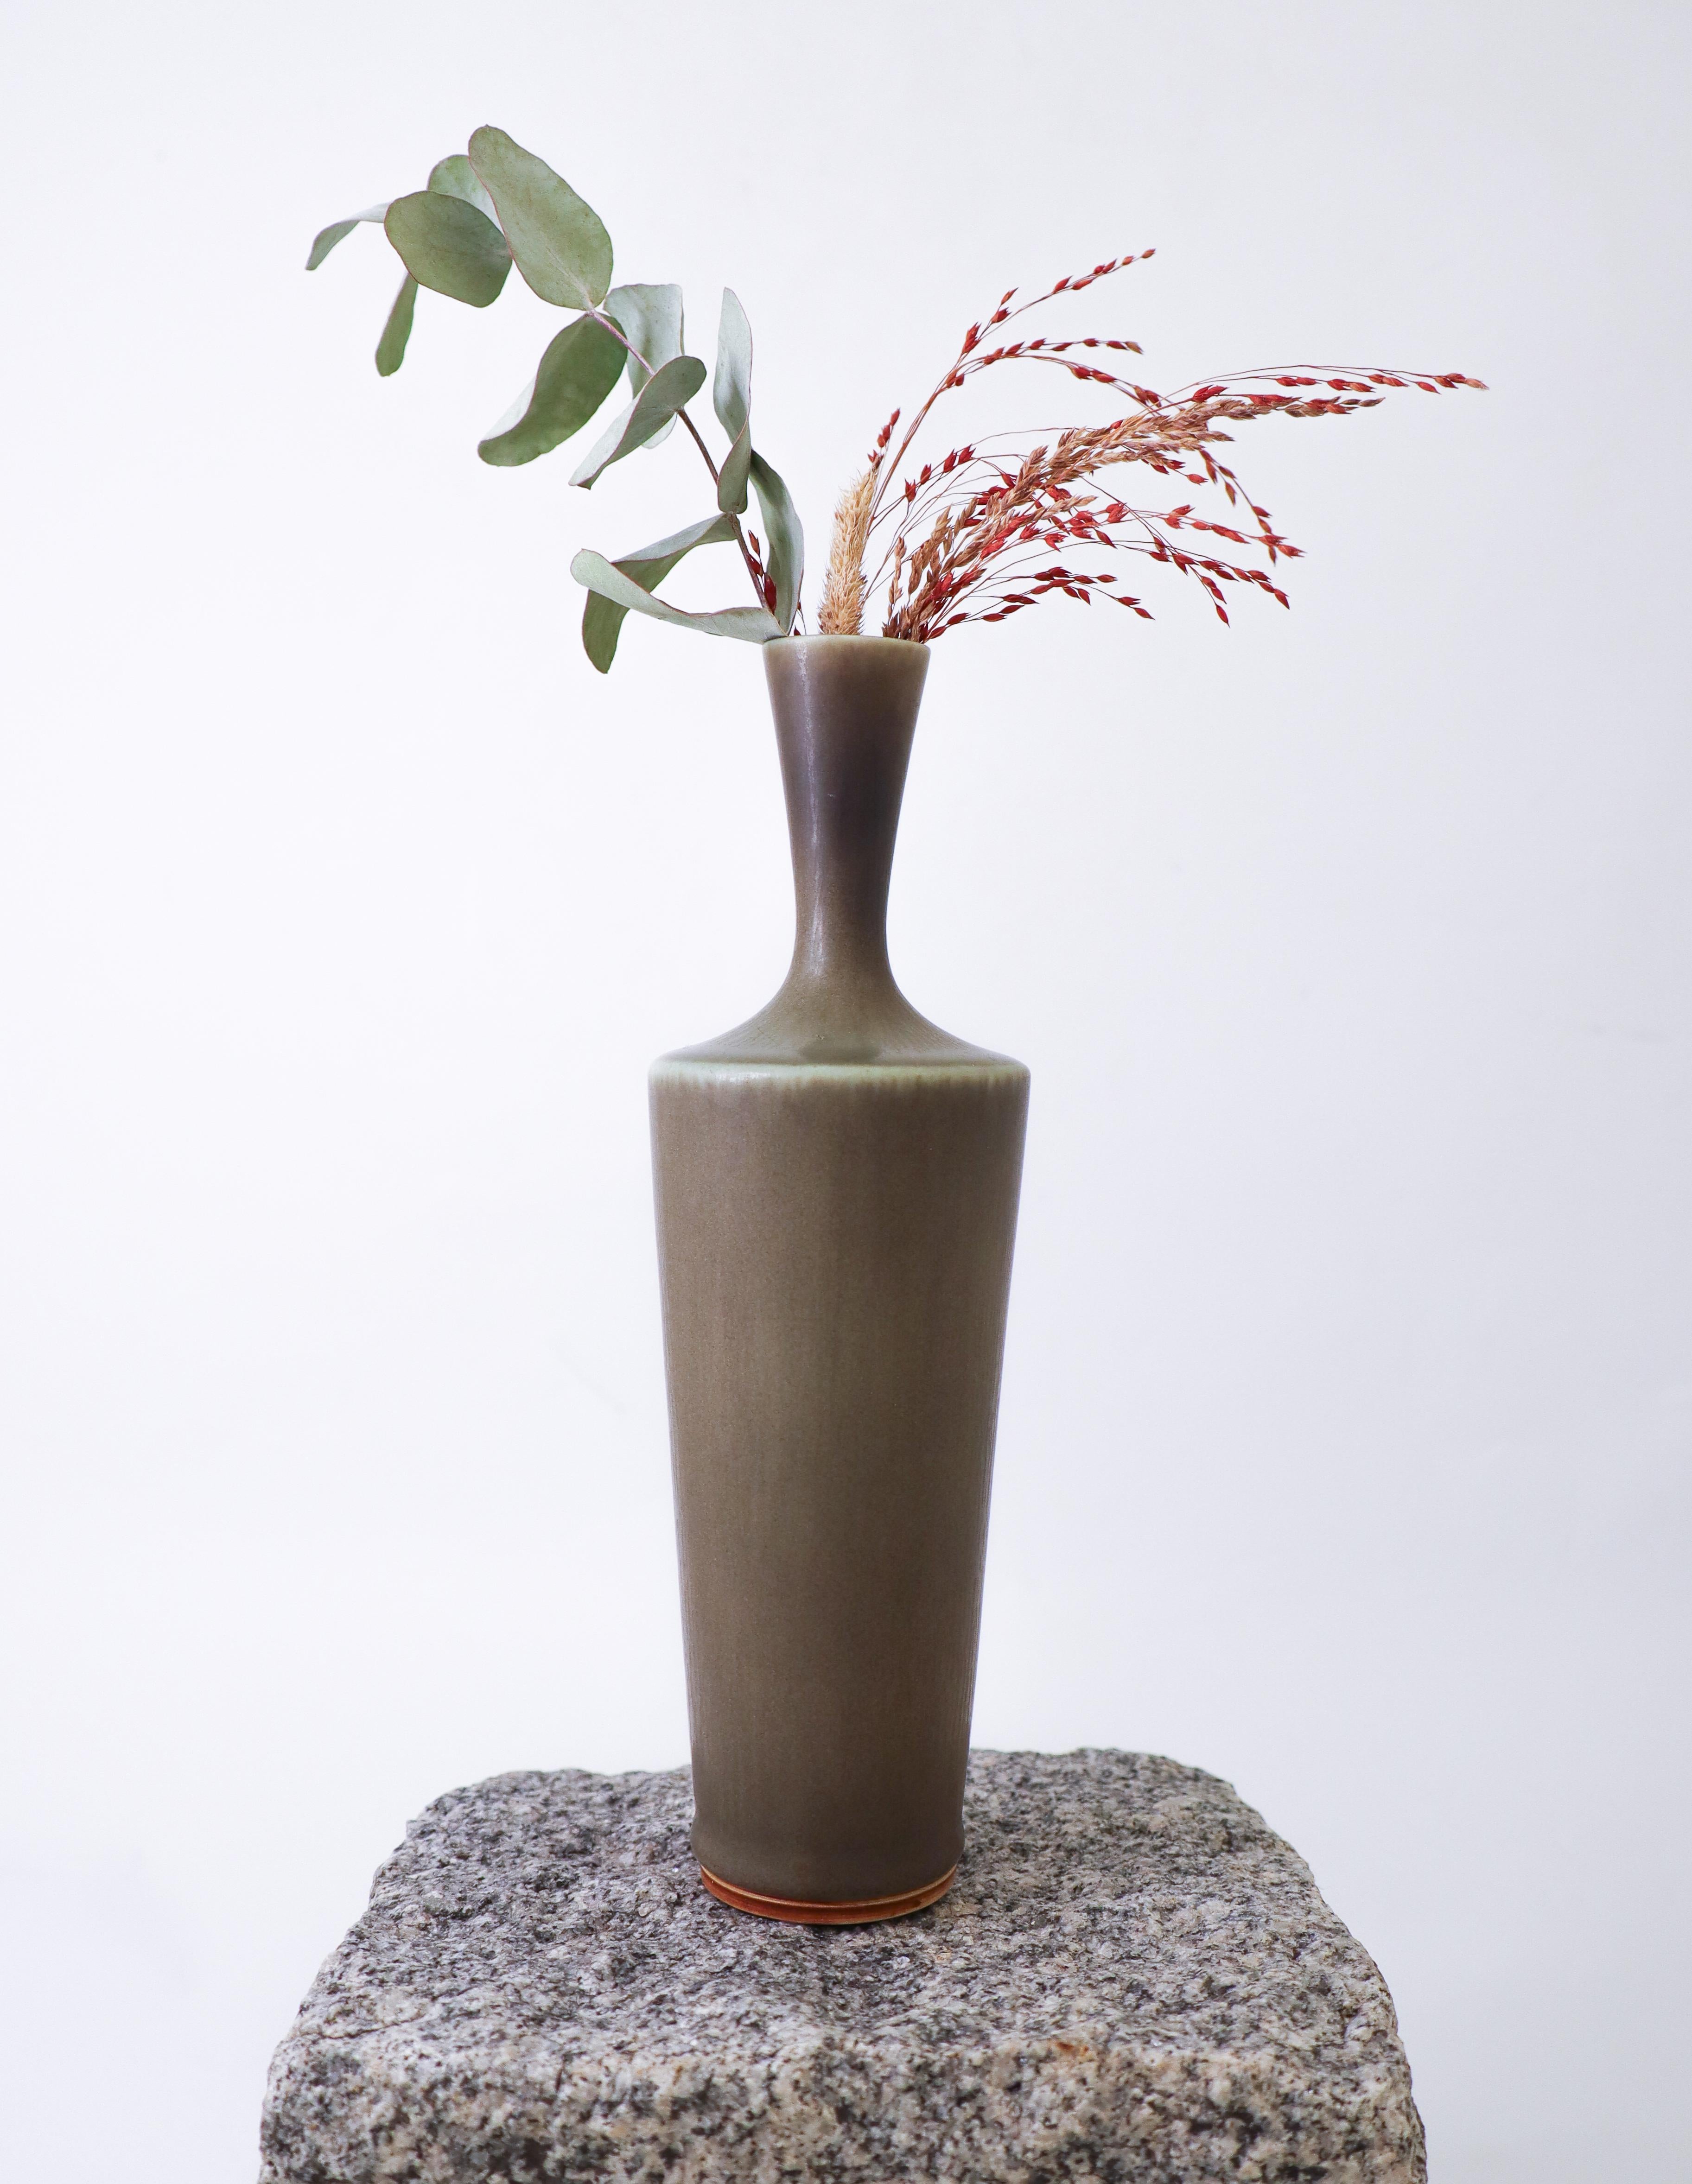 Vase en céramique gris/vert conçu par Berndt Friberg chez Gustavsberg à Stockholm. Le vase mesure 22 cm de haut et environ 7 cm de diamètre. Il est en très bon état et marqué d'un I+I indiquant qu'il a été produit en 1967. 